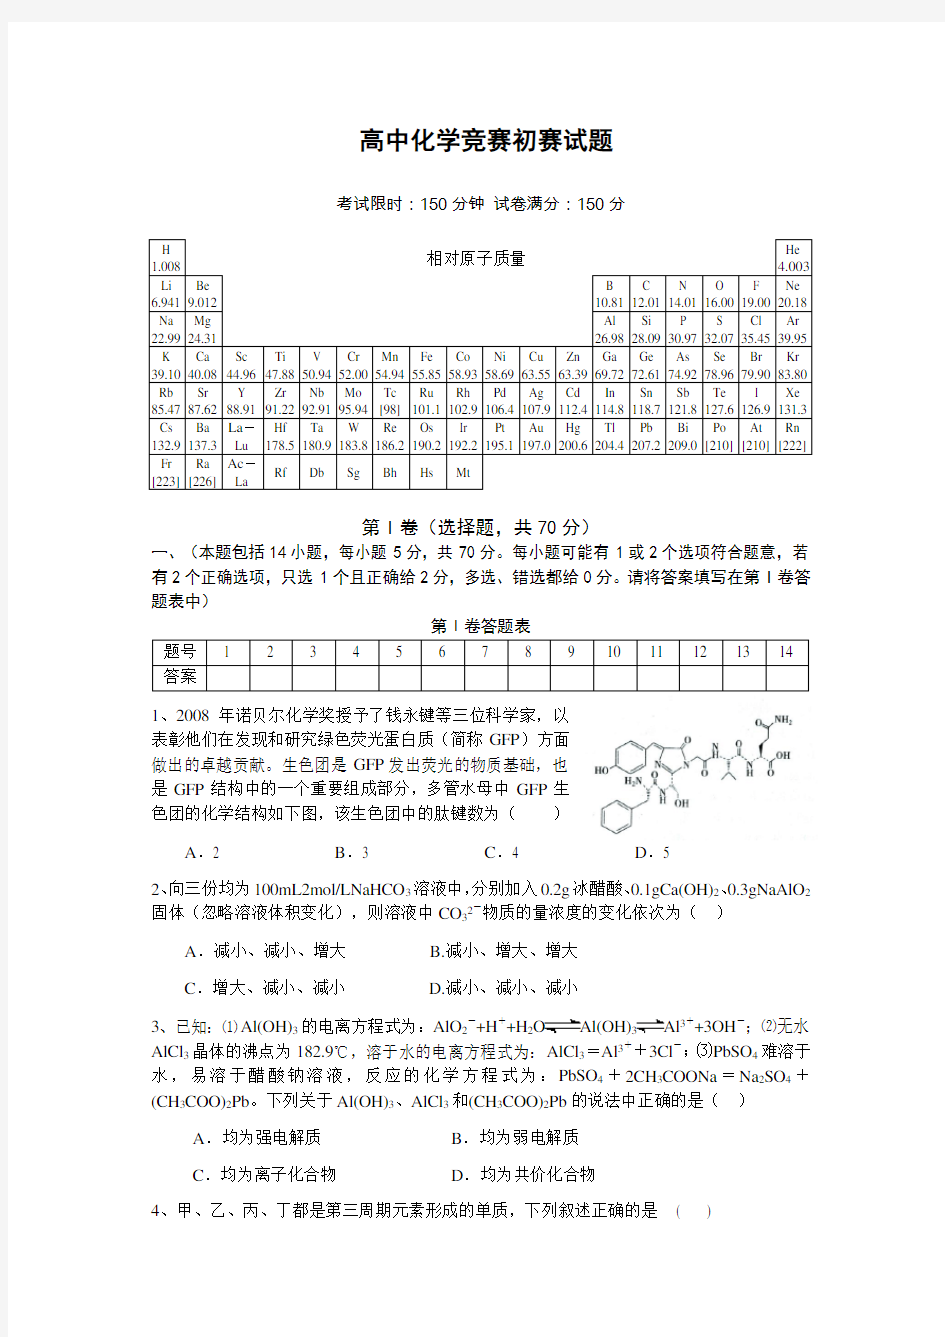 高中化学竞赛初赛试题及答案